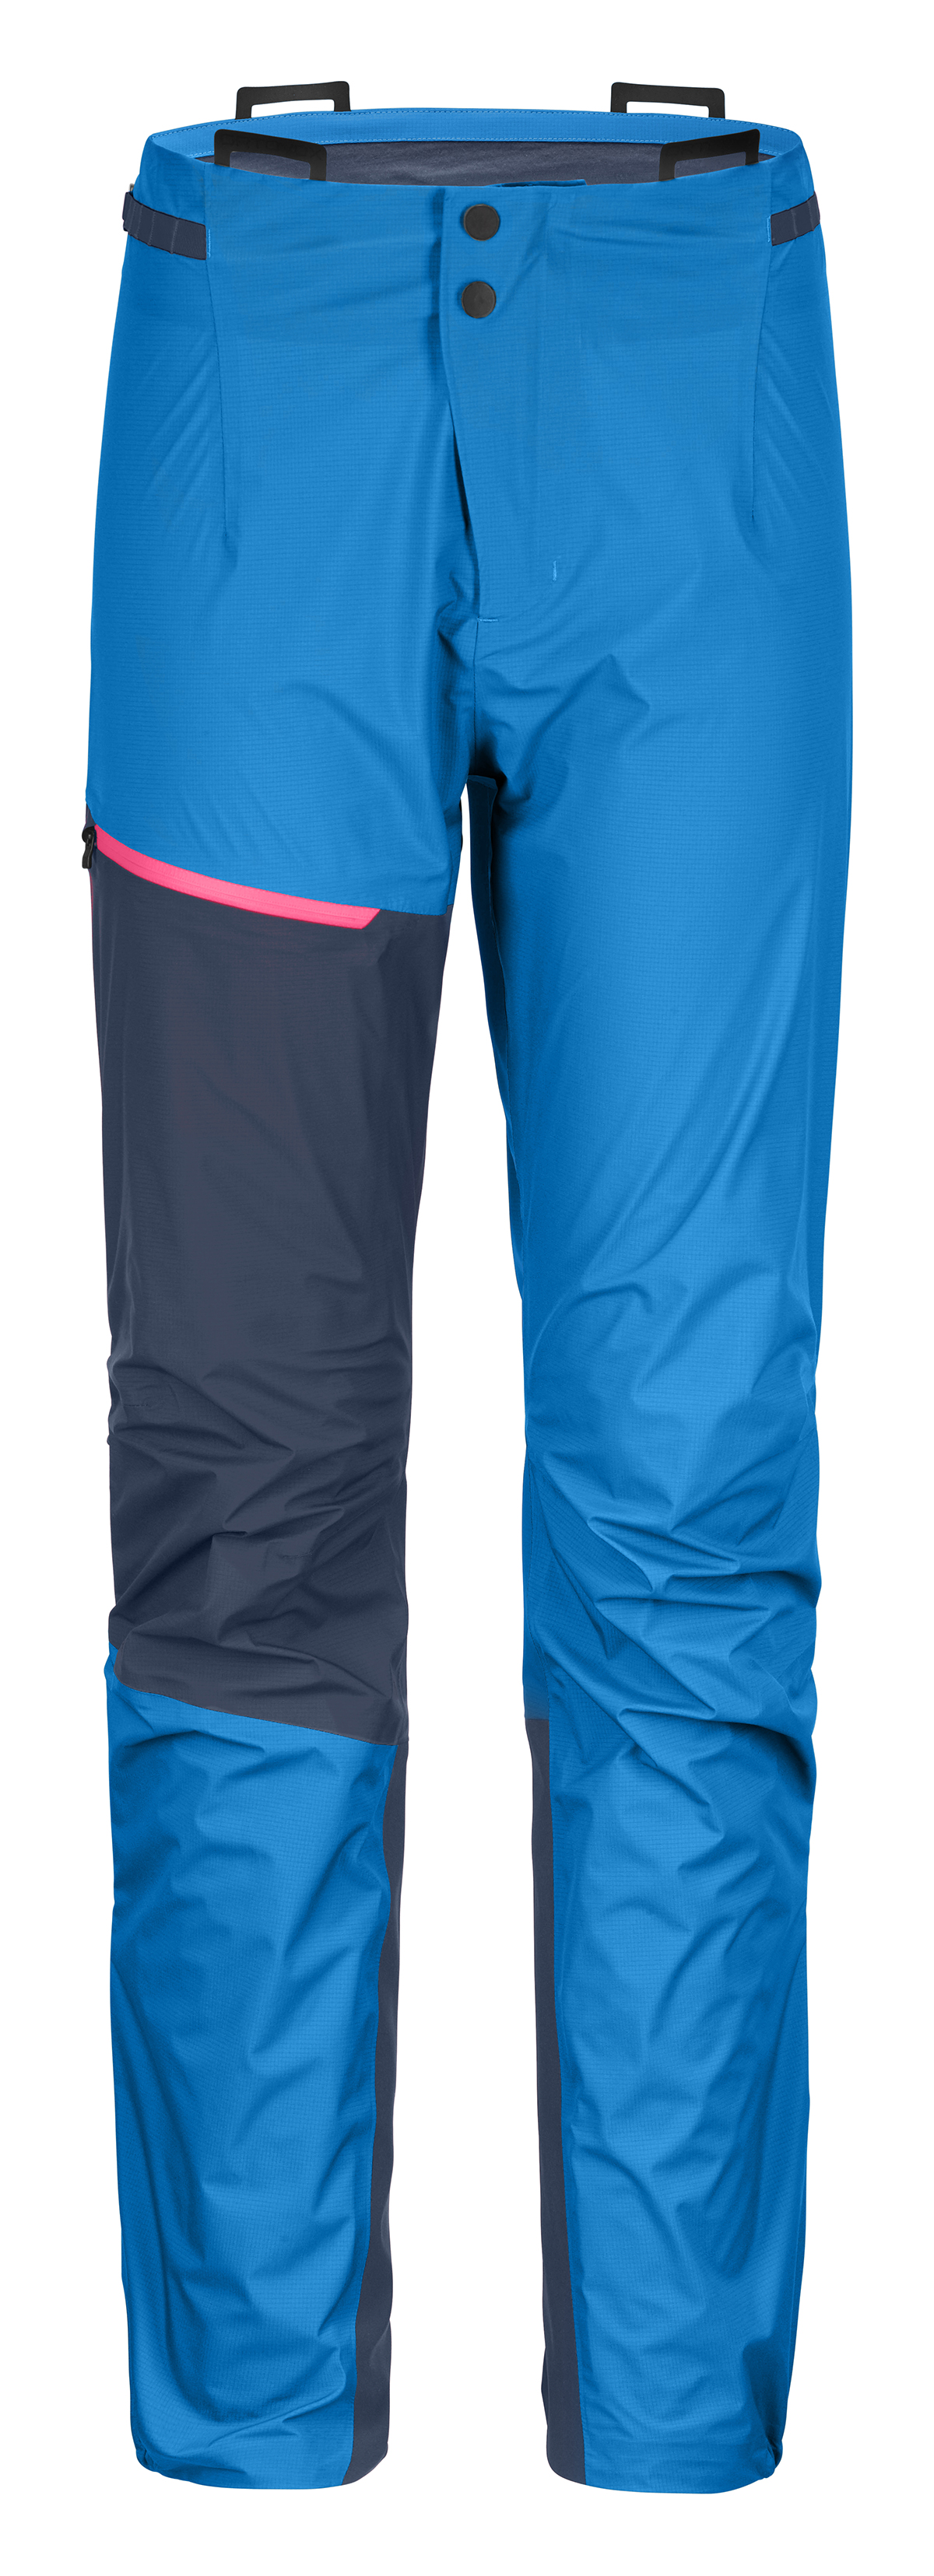 Dámské technické kalhoty ORTOVOX 3L Westalpen Light Safety blue L